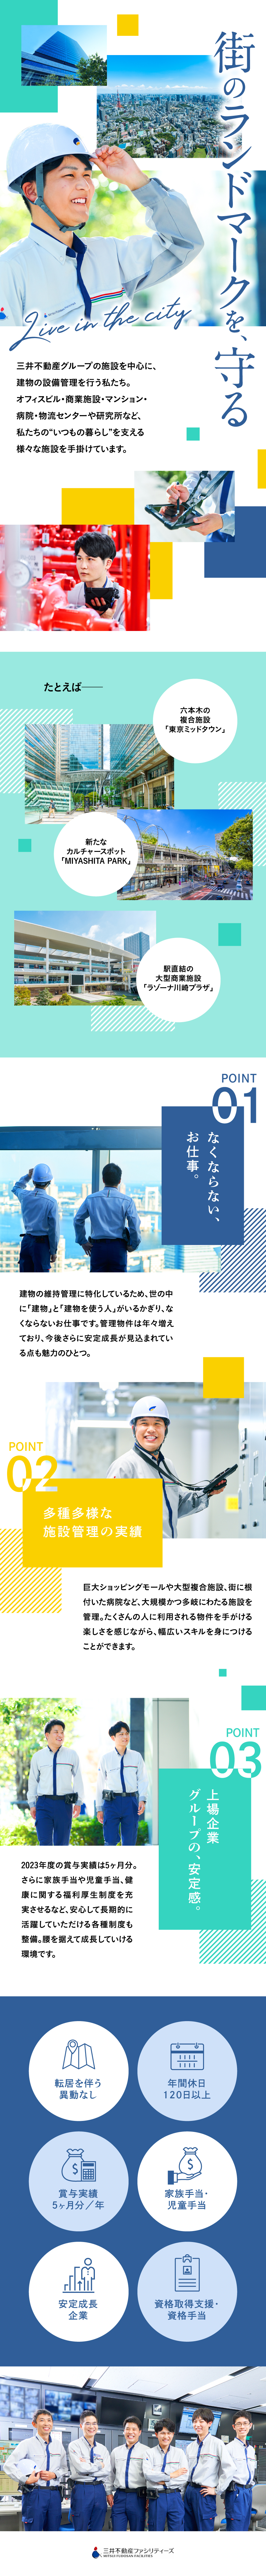 三井不動産ファシリティーズ株式会社 からのメッセージ